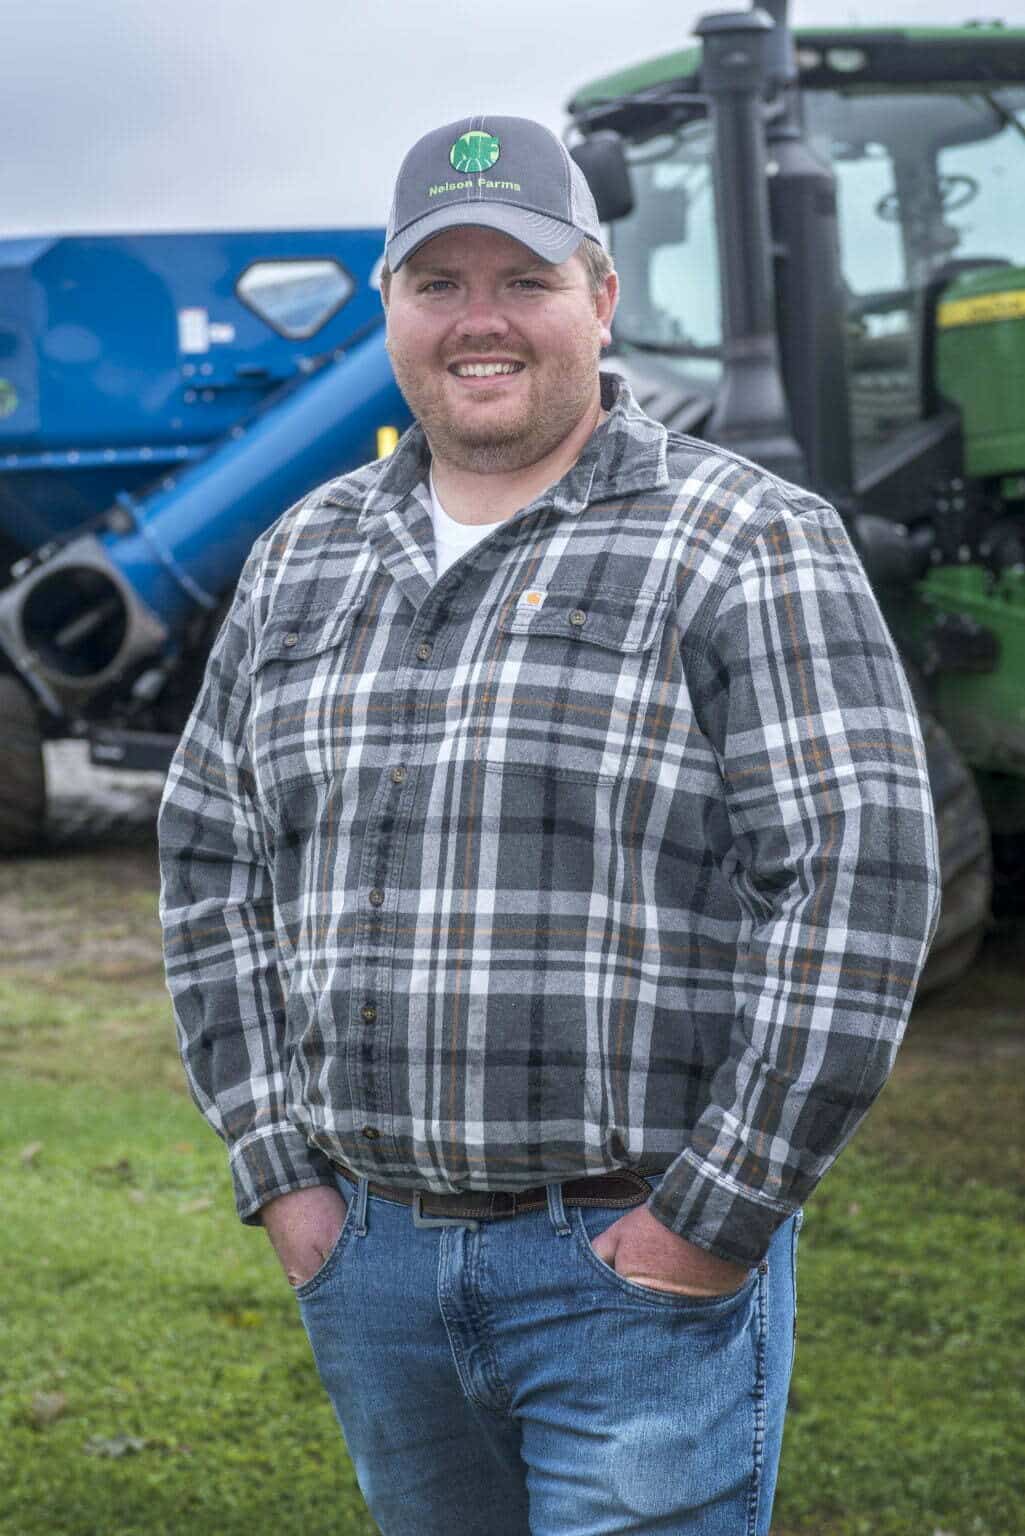 Man smiling in front of John Deer tractor